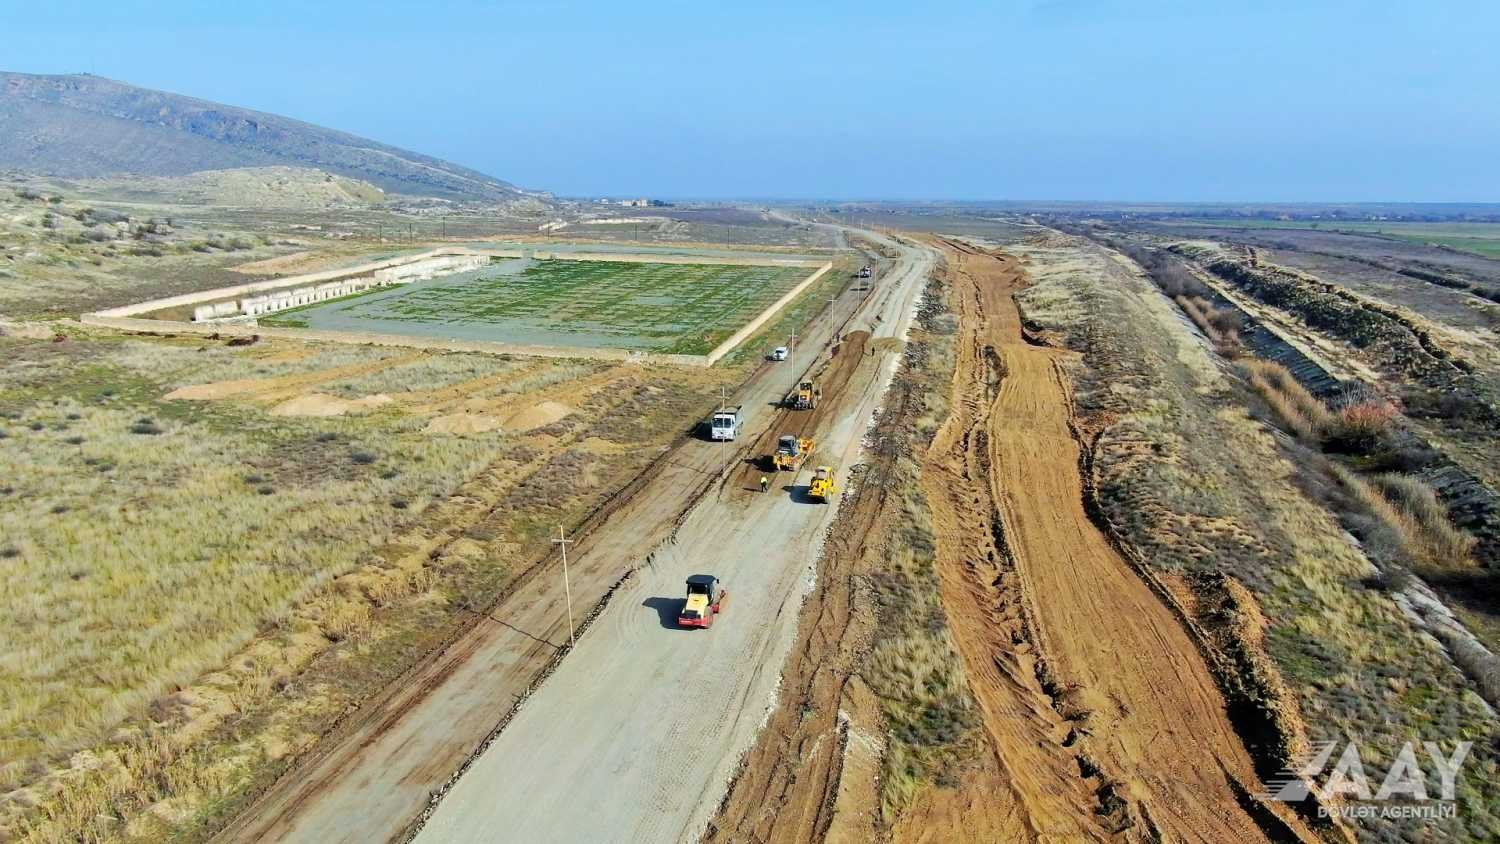 Ağdərə yolunun inşasına başlanıldı (FOTO)